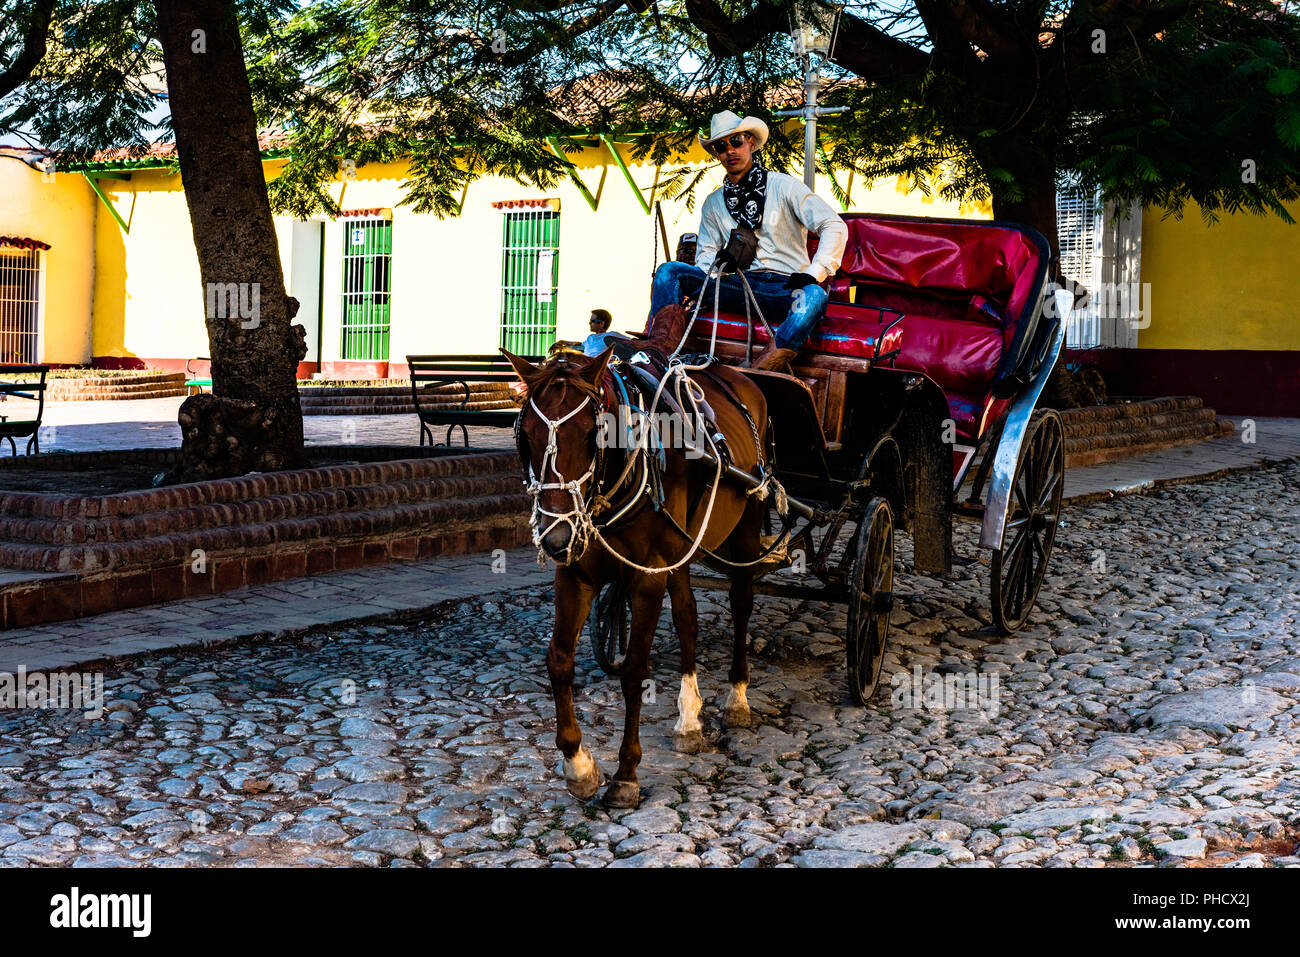 Cowboy cubain prend les rênes du Cheval et buggy sur une rue pavée de Trinidad, Cuba. Banque D'Images